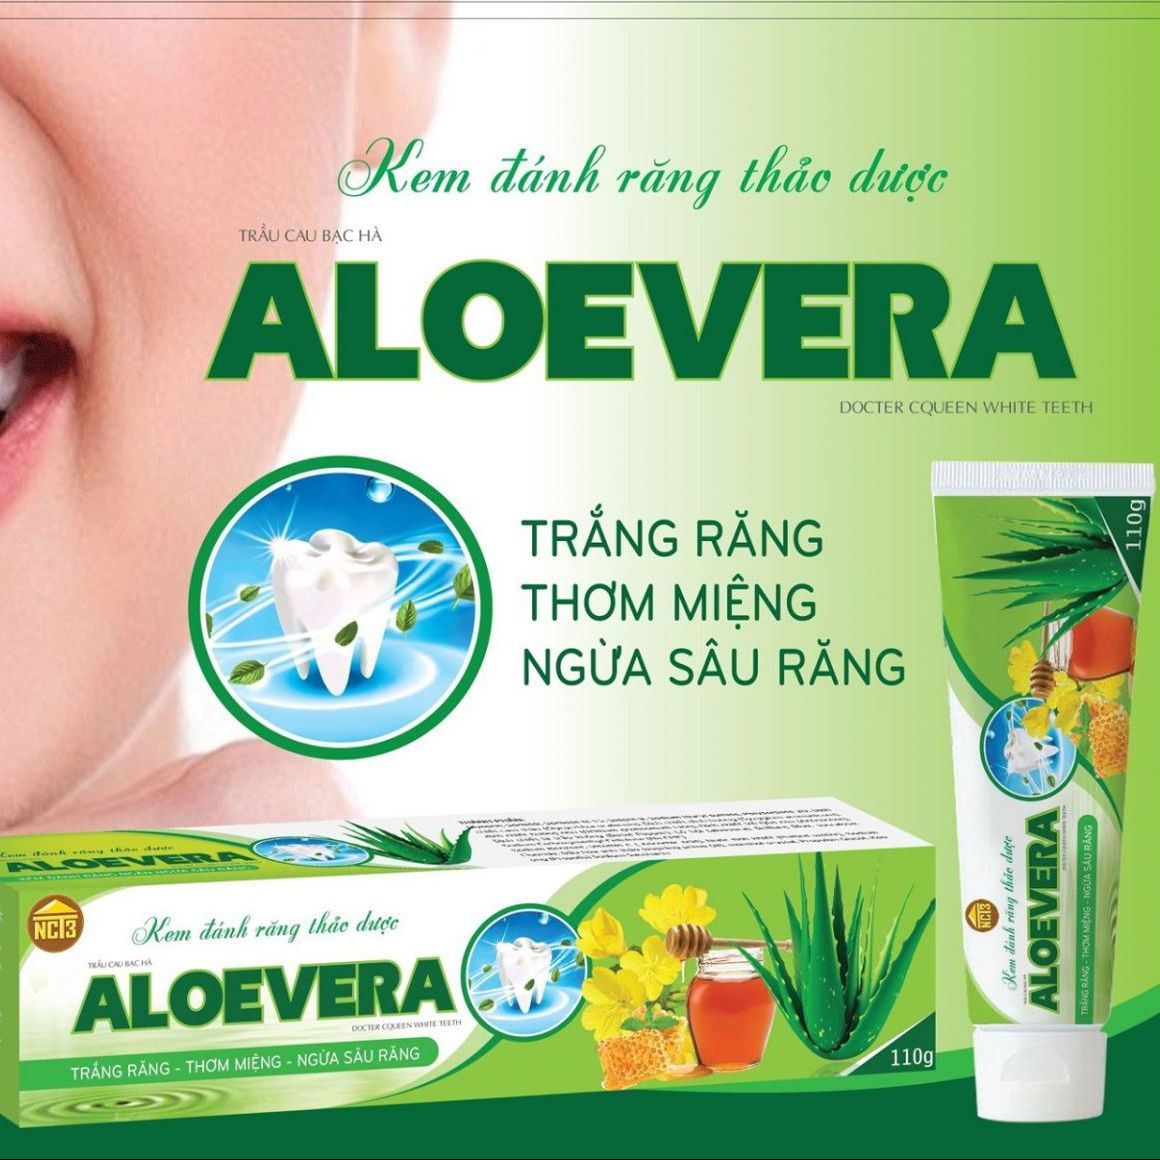 Kem đánh răng thảo dược Aloevera